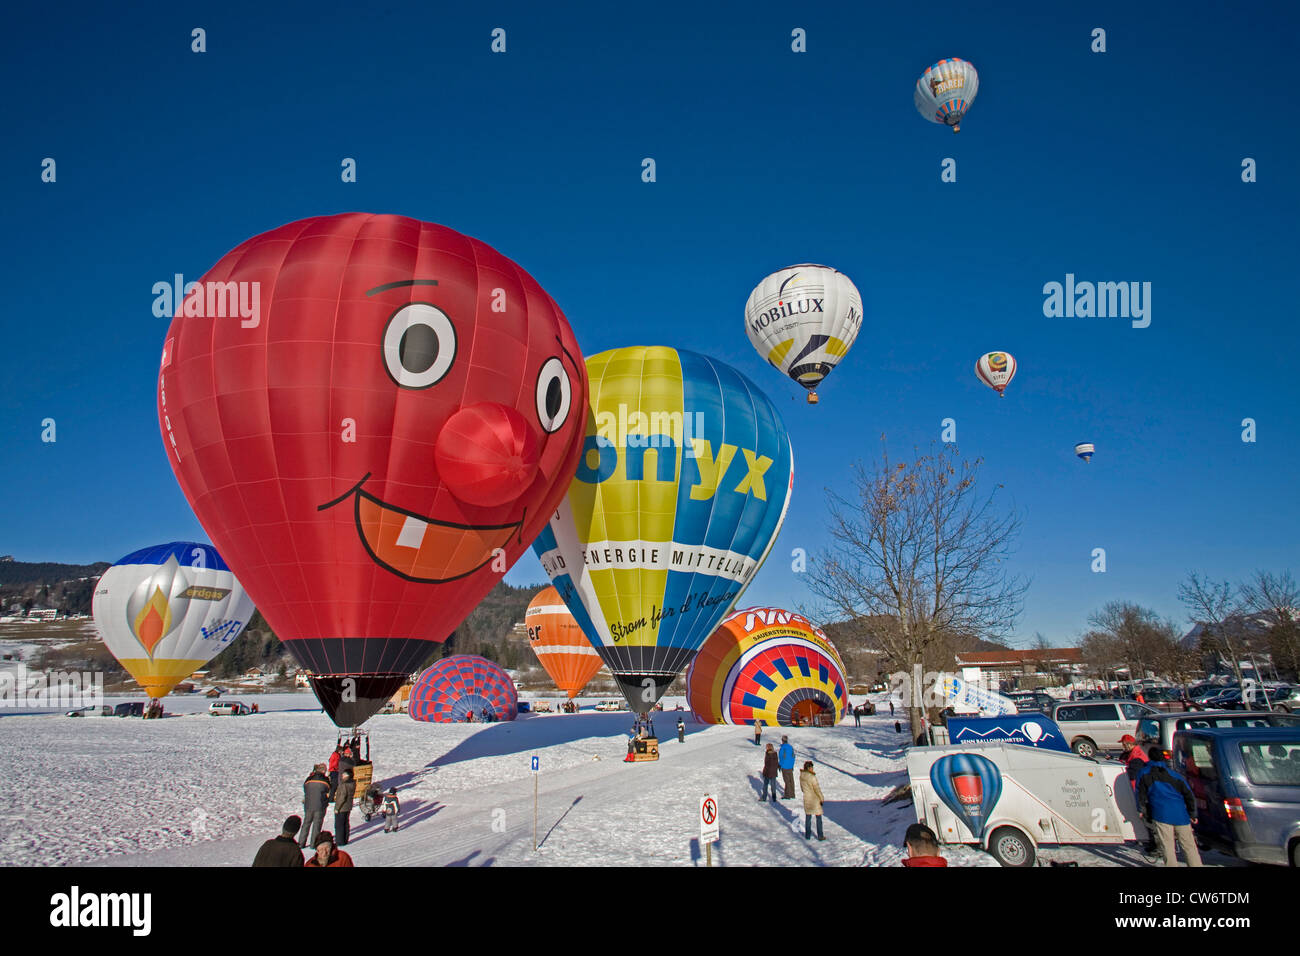 Heißluft-Ballon-Festival auf einem Schneefeld mit mehreren Ballons in Vorbereitung für den Start oder abgenommen haben und eine Menge von Zuschauern, Oberstdorf, Allgäu, Bayern, Deutschland Stockfoto